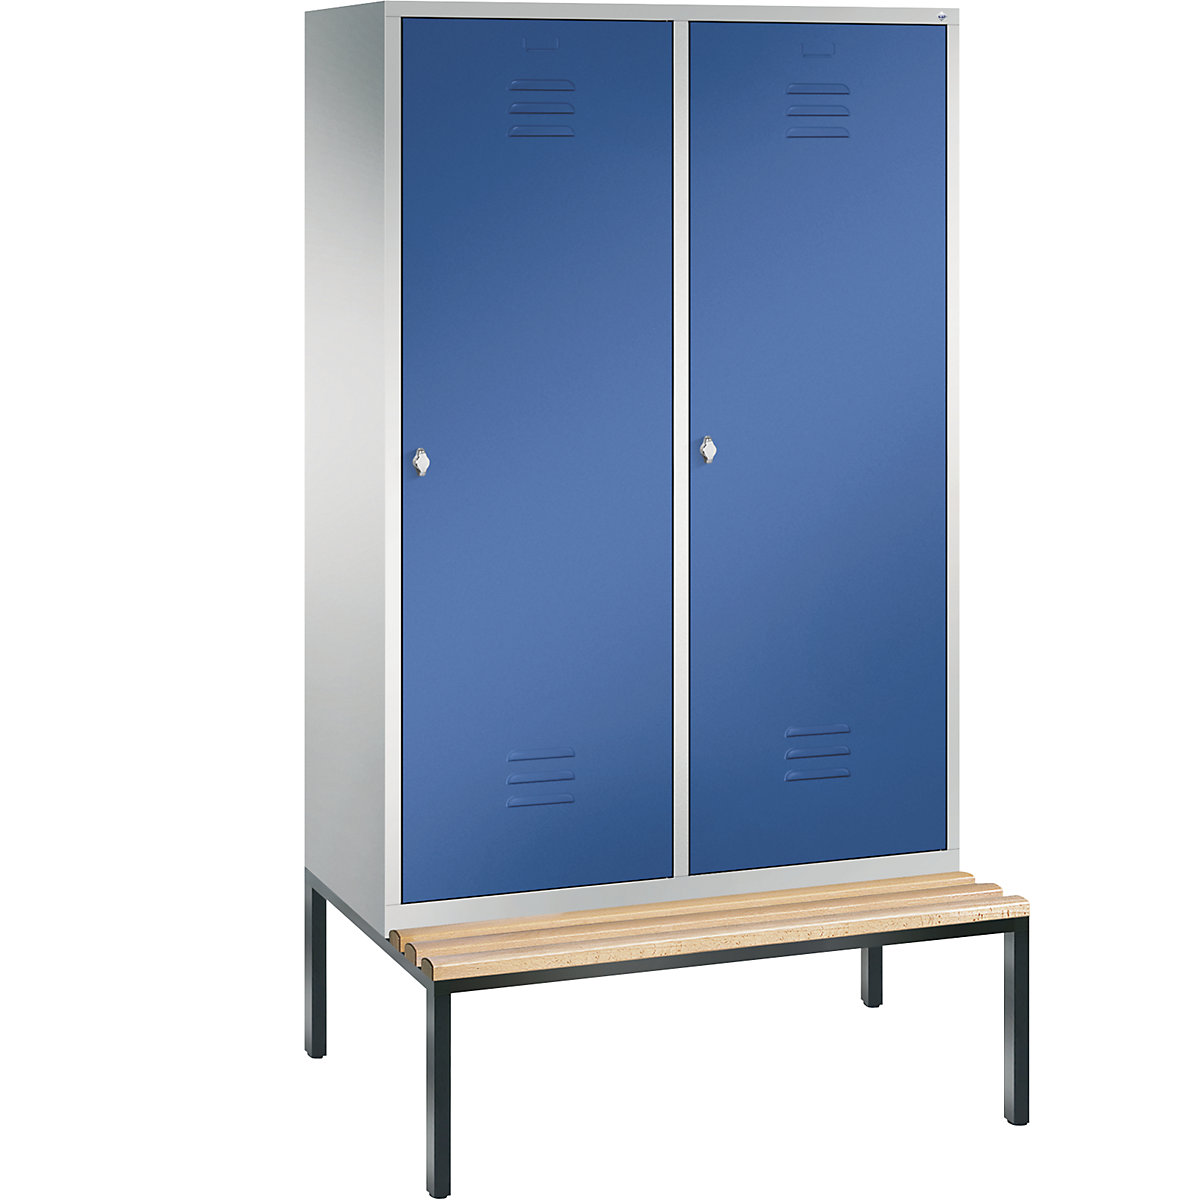 C+P – Armario guardarropa CLASSIC con banco integrado debajo y puerta sobre 2 compartimentos, 4 compartimentos, anchura de compartimento 300 mm, gris luminoso / azul genciana